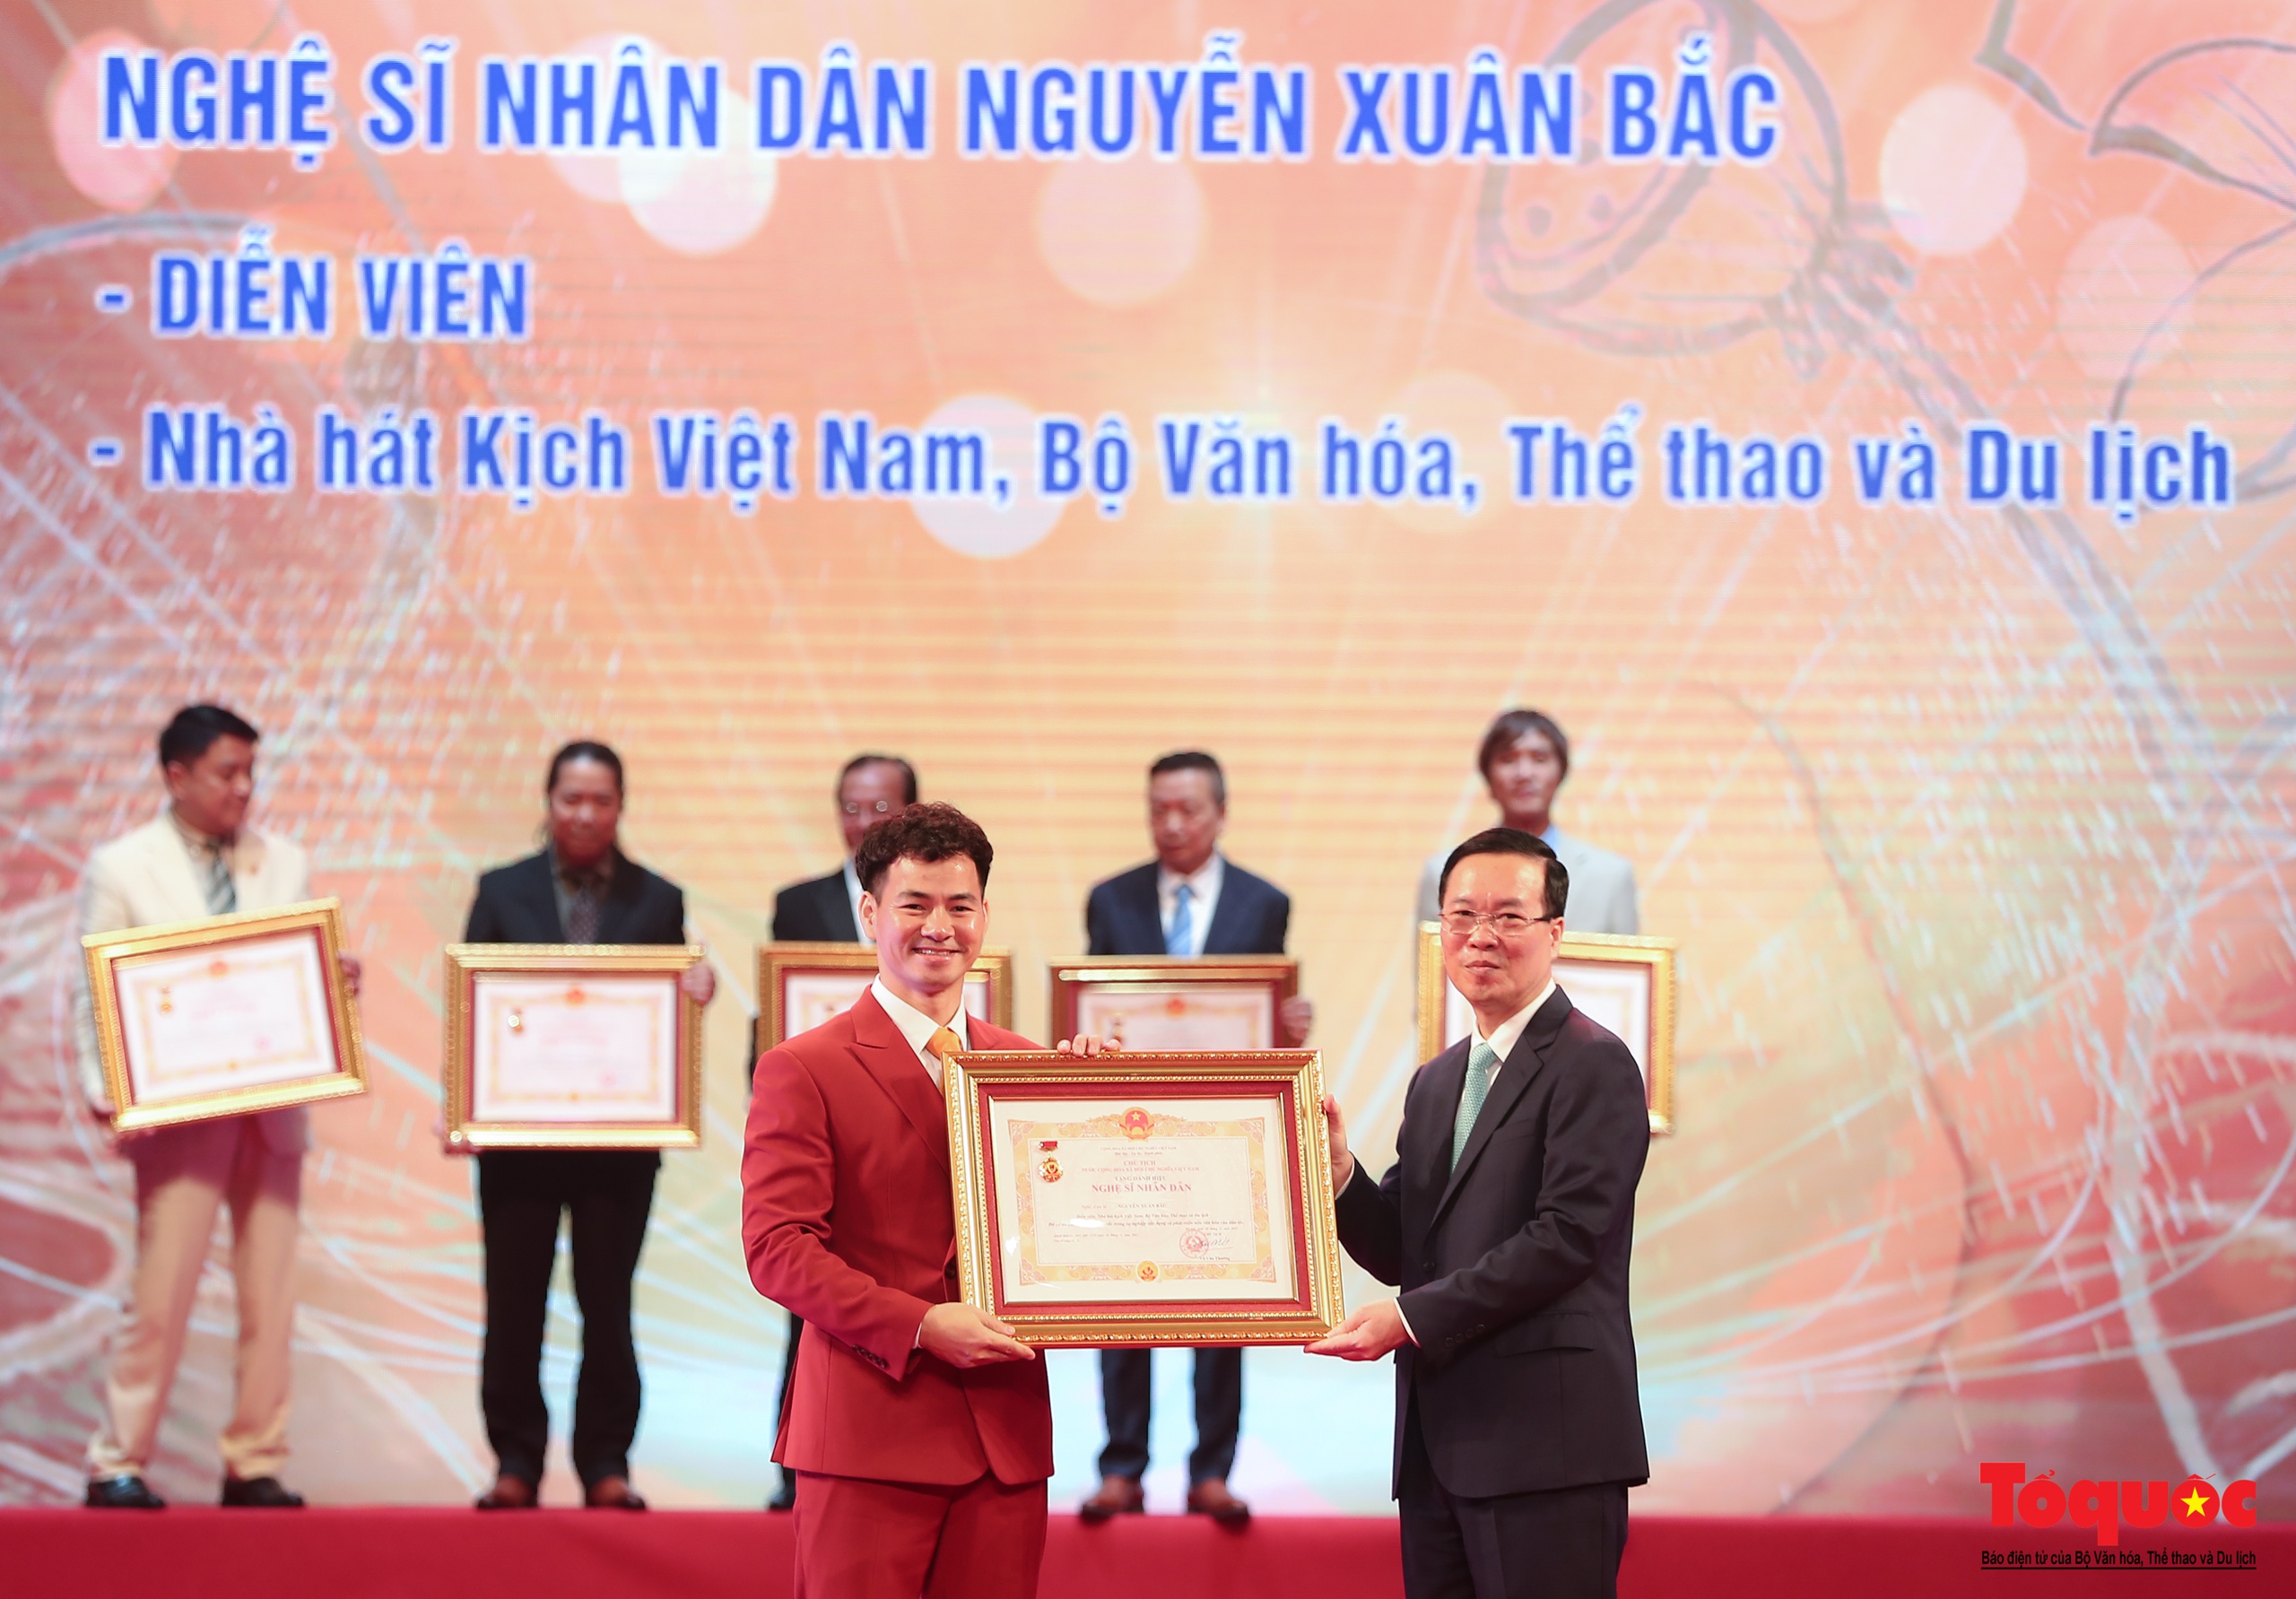 Toàn cảnh Lễ trao tặng danh hiệu Nghệ sĩ Nhân dân, Nghệ sĩ Ưu tú lần thứ 10 - Ảnh 9.